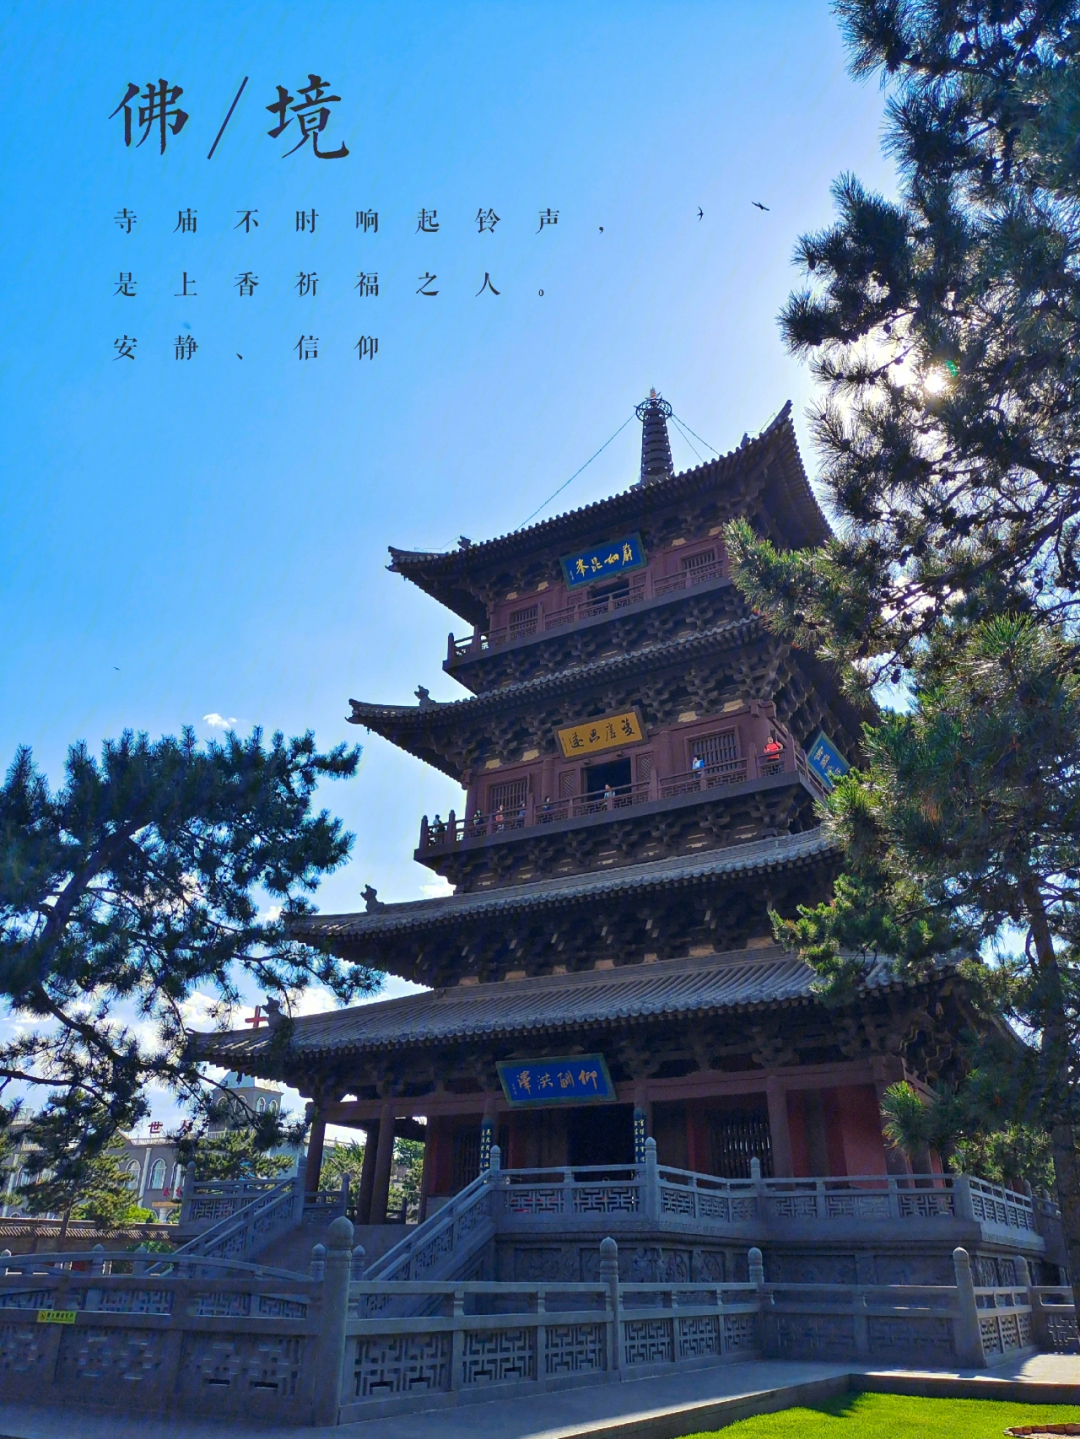 大同旅行典藏东方维纳斯的宝藏华严寺